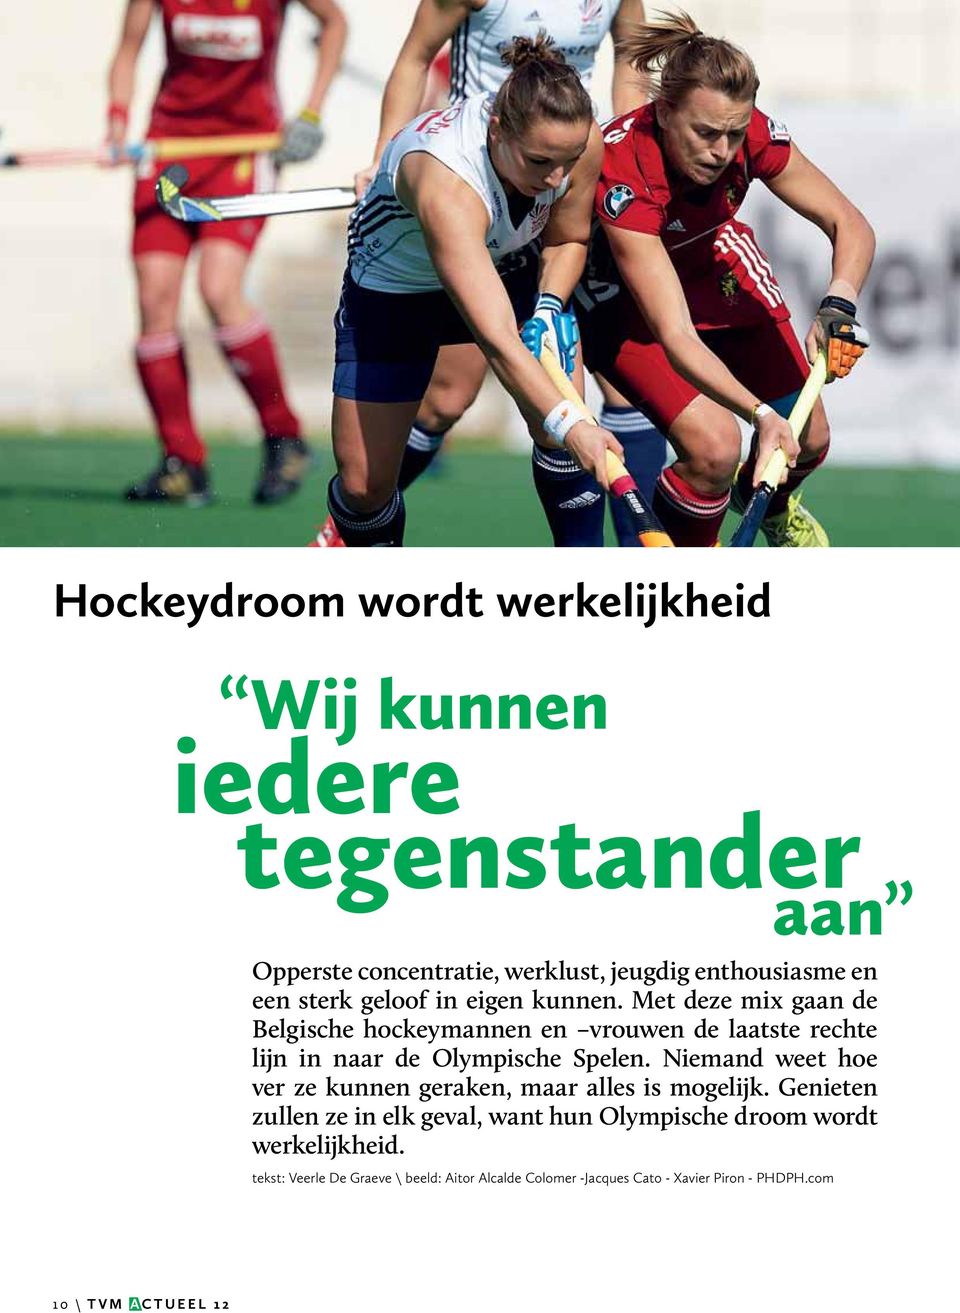 Met deze mix gaan de Belgische hockeymannen en vrouwen de laatste rechte lijn in naar de Olympische Spelen.